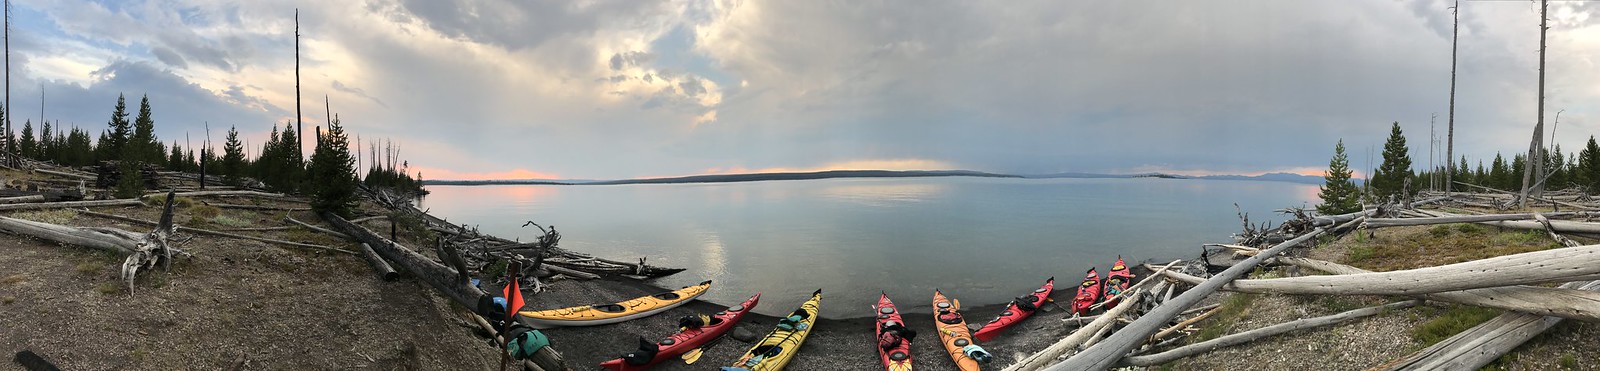 2018_EXPD_Yellowstone Kayaking 44